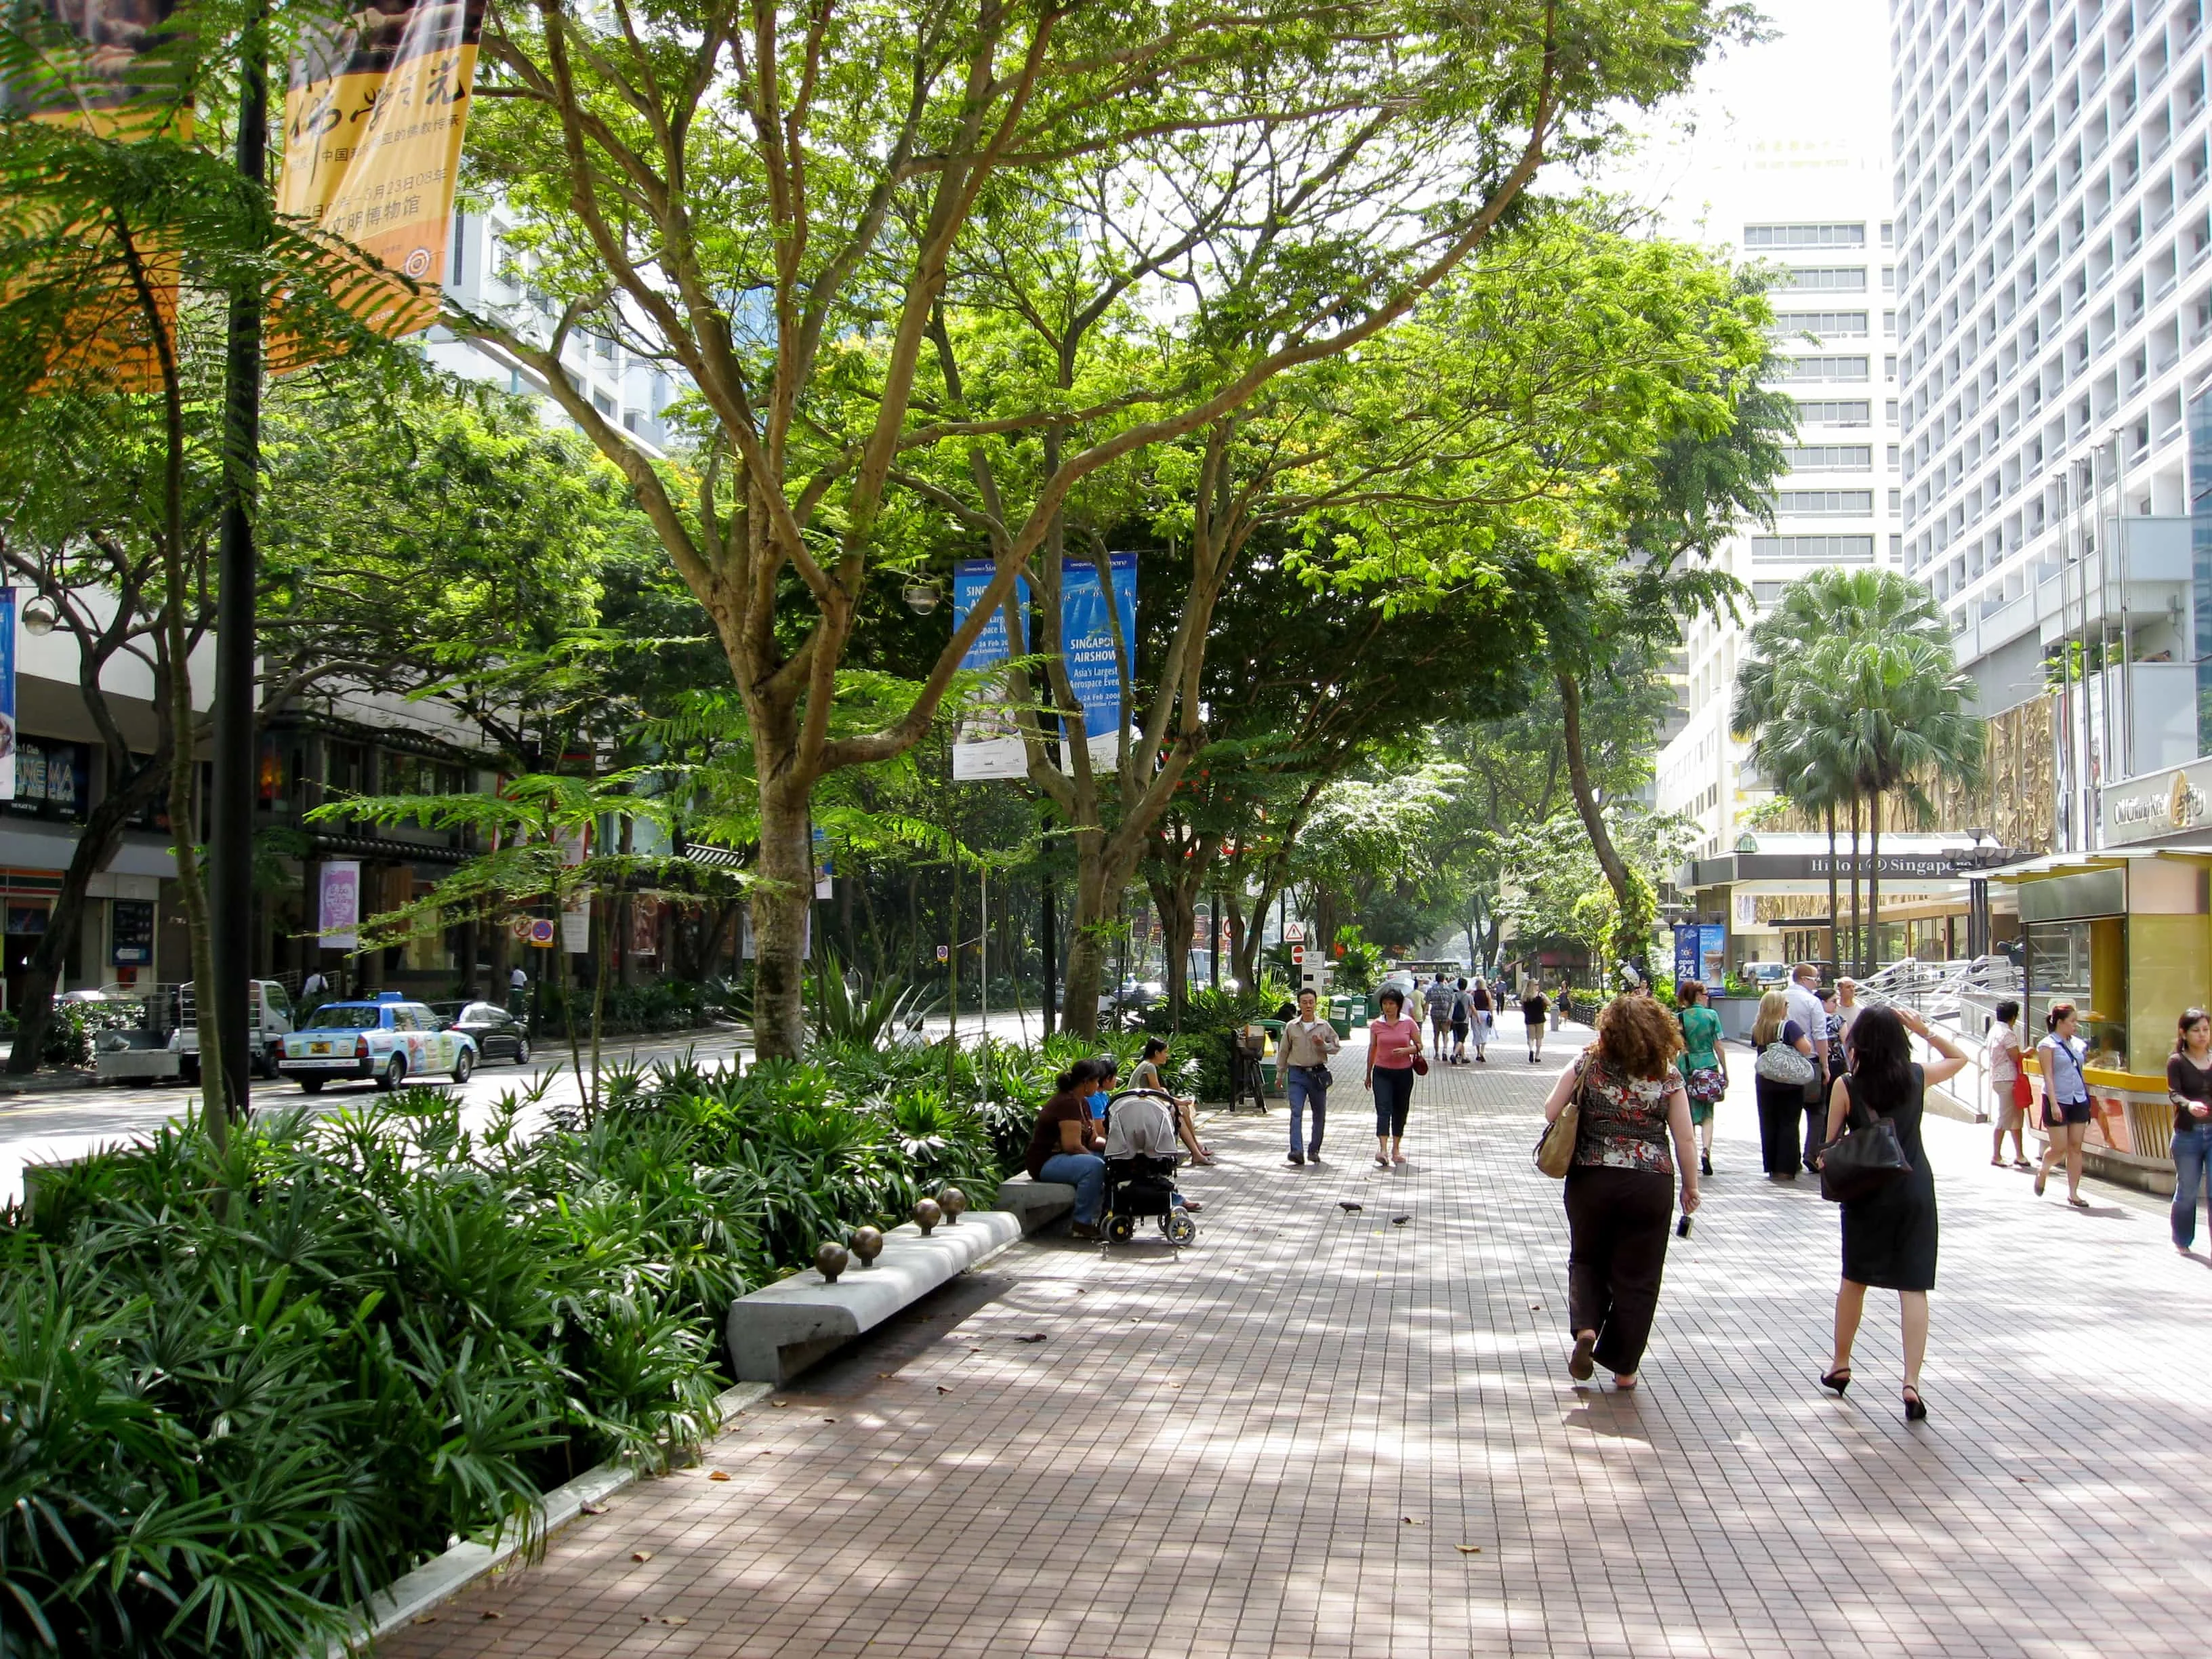 Singapore tousit spots, Orchard Road